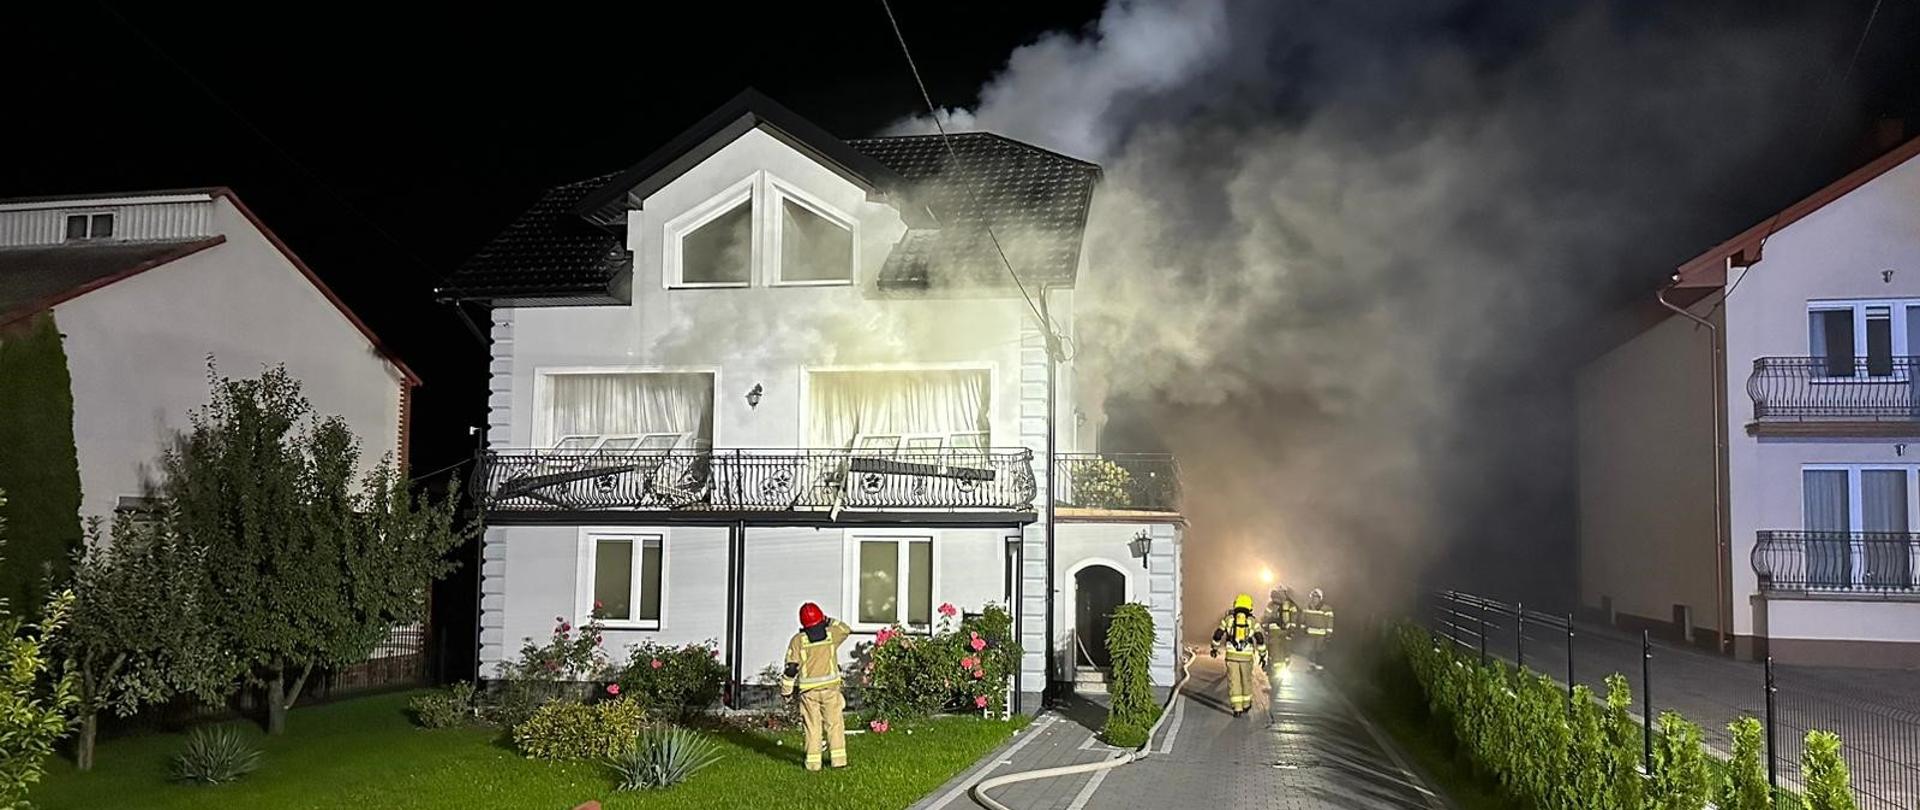 Na zdjęciu budynek jednorodzinny, z którego wydobywa się gęsty dym przez otwory okienne. Wokół domu strażacy w ubraniach specjalnych oraz aparatach powietrznych usuwający skutki pożaru. Zdjęcie zrobione jest w porze nocnej. 